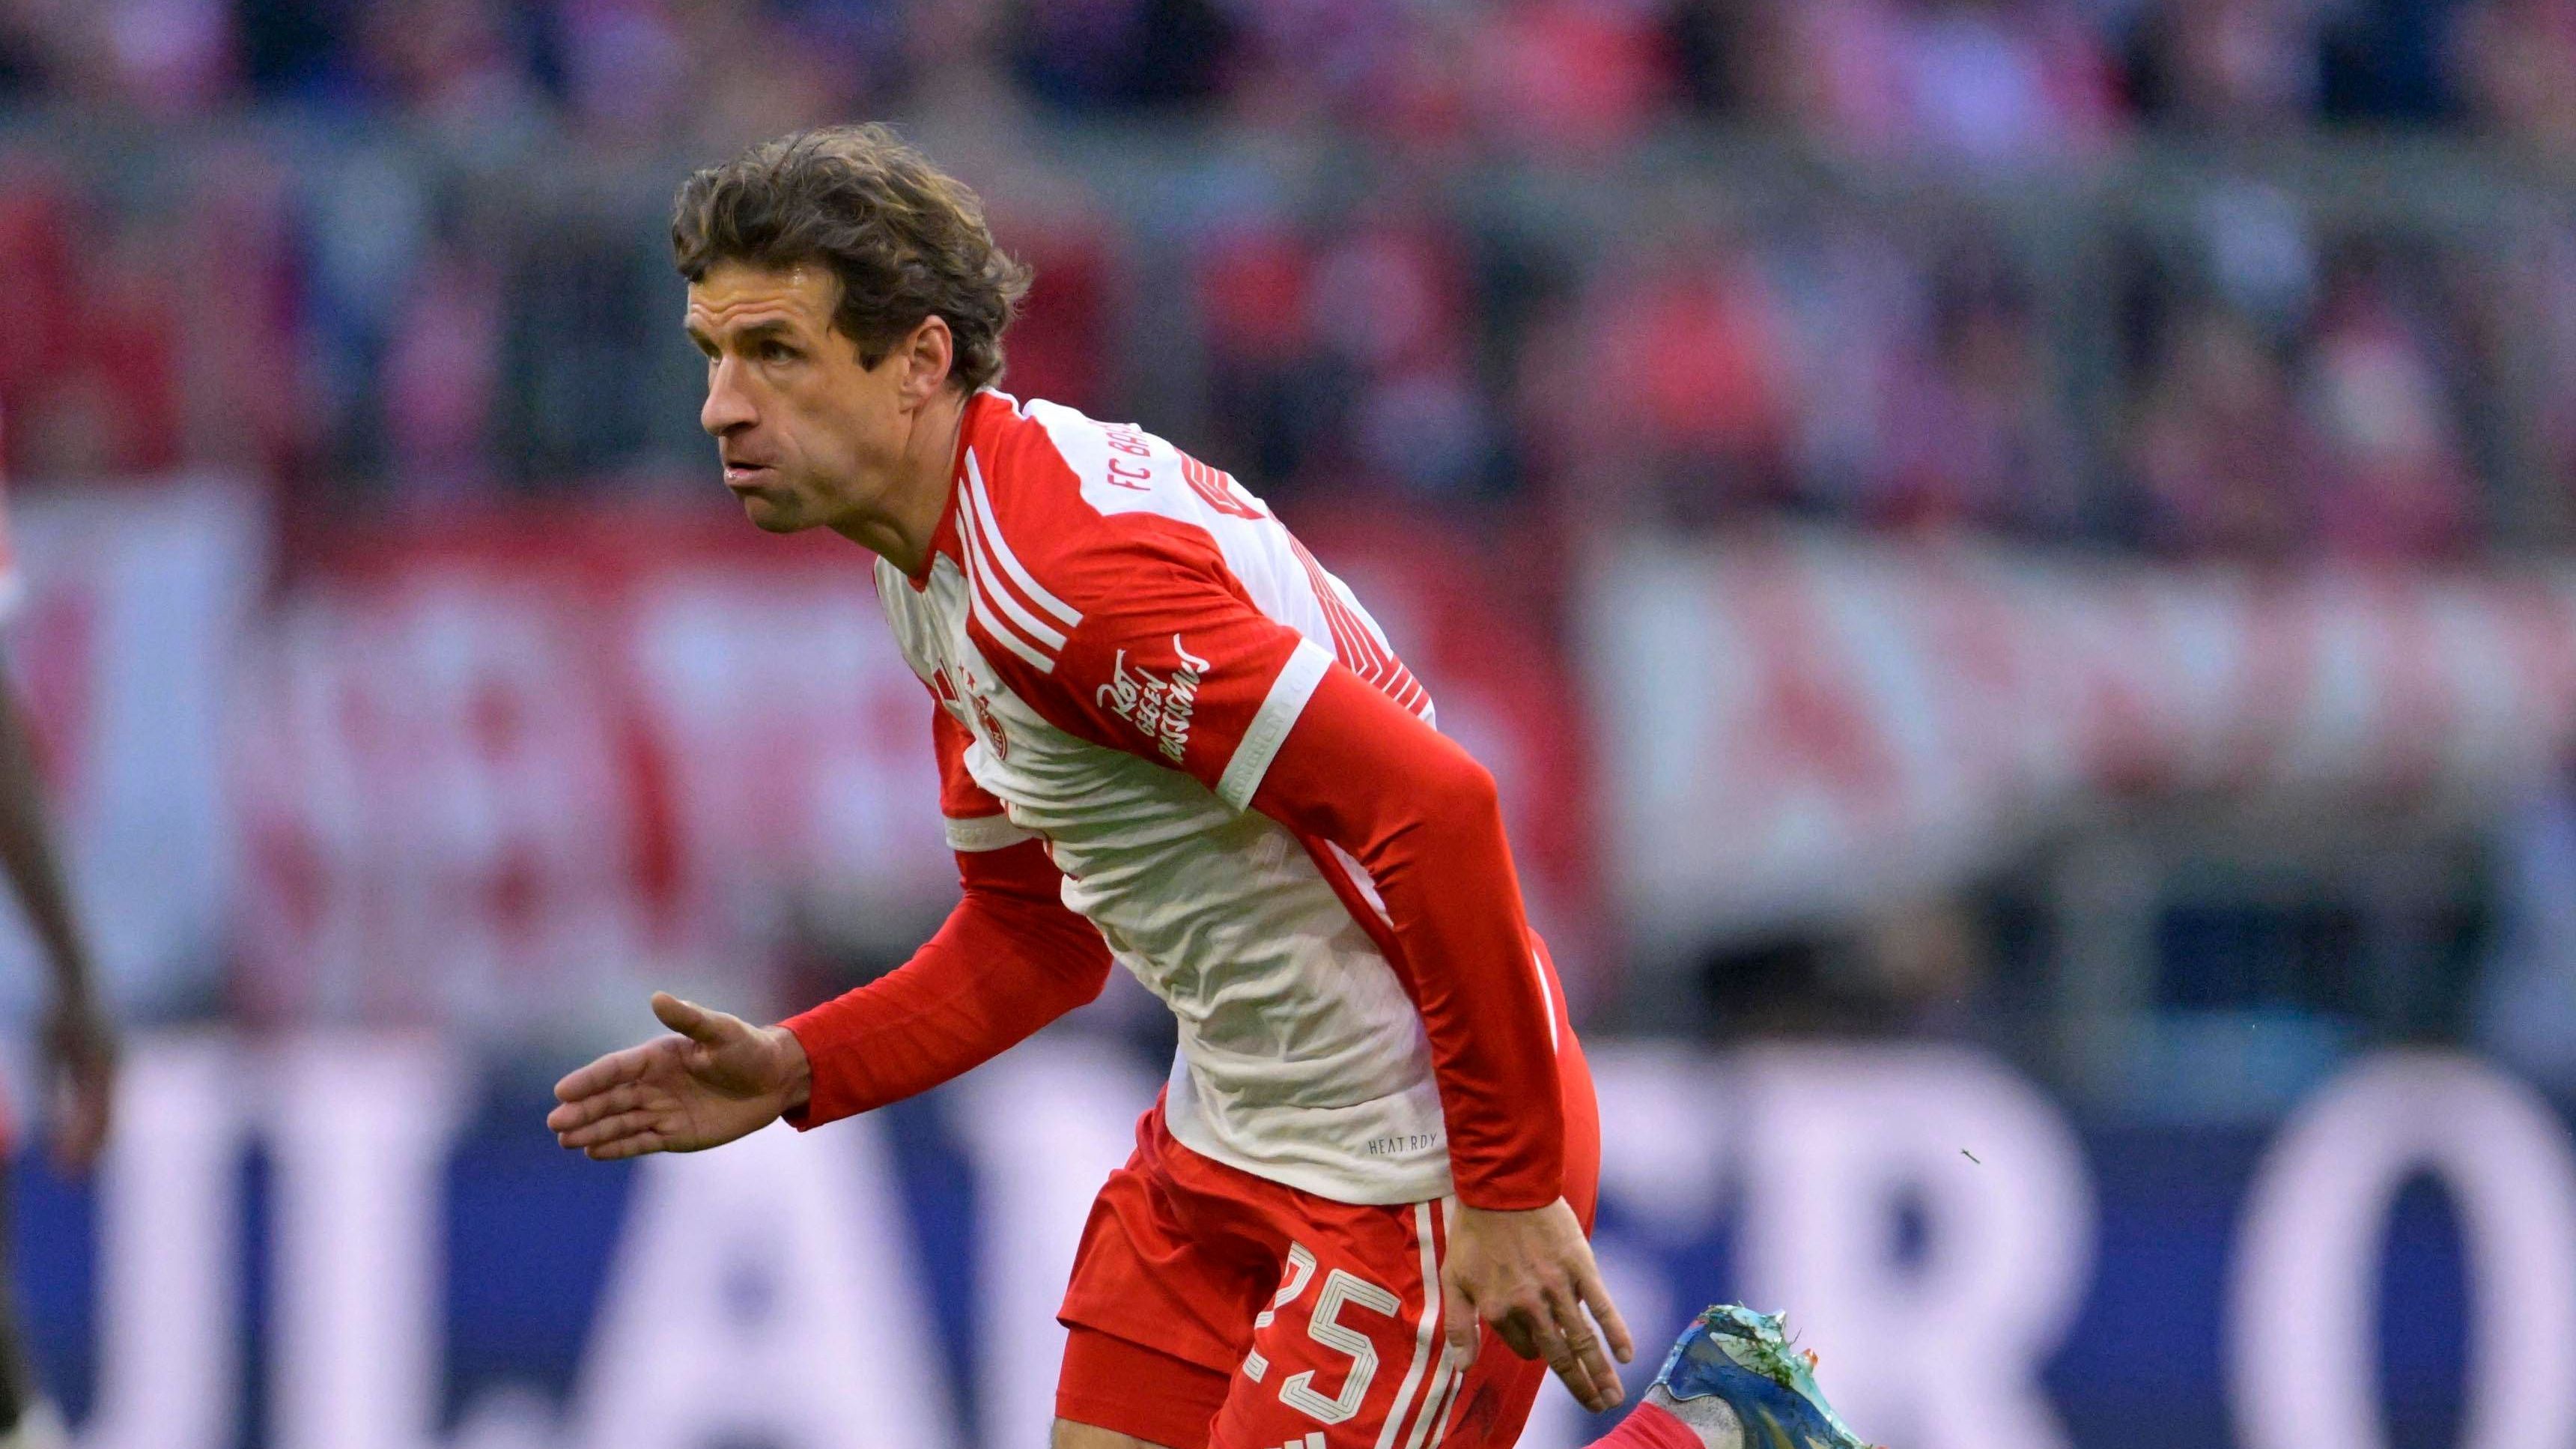 <strong>Thomas Müller (FC Bayern)</strong><br>Der Routinier durfte bei den Bayern zuletzt mal wieder von Anfang an ran, konnte sich aber nicht nachdrücklich für eine größere Rolle empfehlen. Er ist auch für Nagelsmann wichtig - in der aktuellen Form aber in erster Linie als Führungsspieler und für die Kabine.